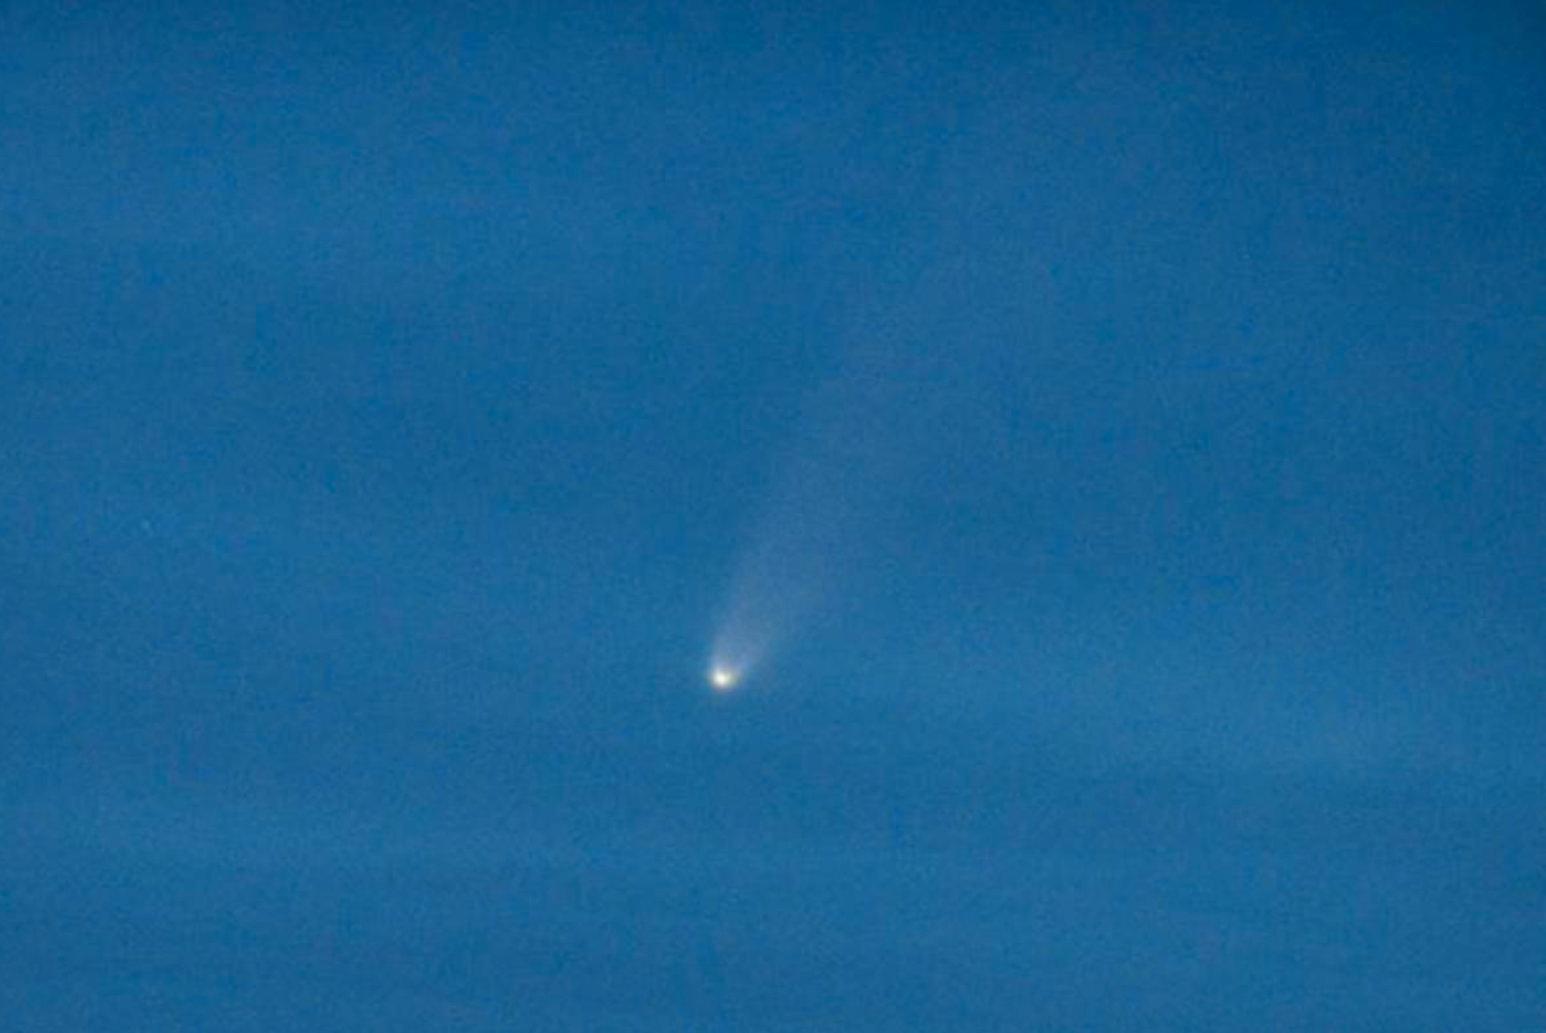 Kometen Neowise över Jönköping i veckan.